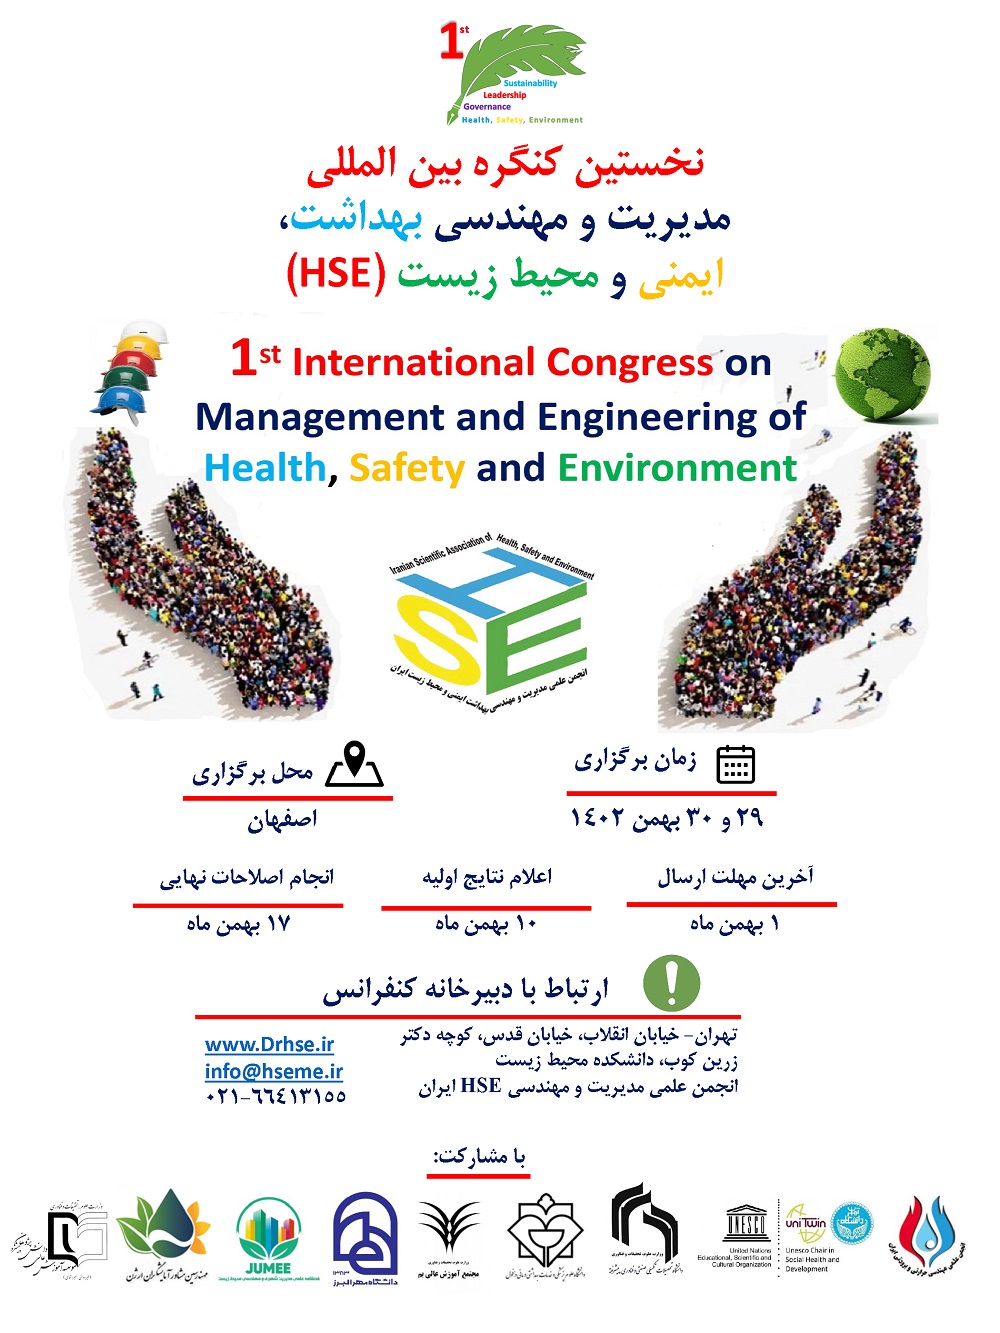 نخستین کنگره بین المللی مدیریت و مهندسی بهداشت، ایمنی و محیط زیست